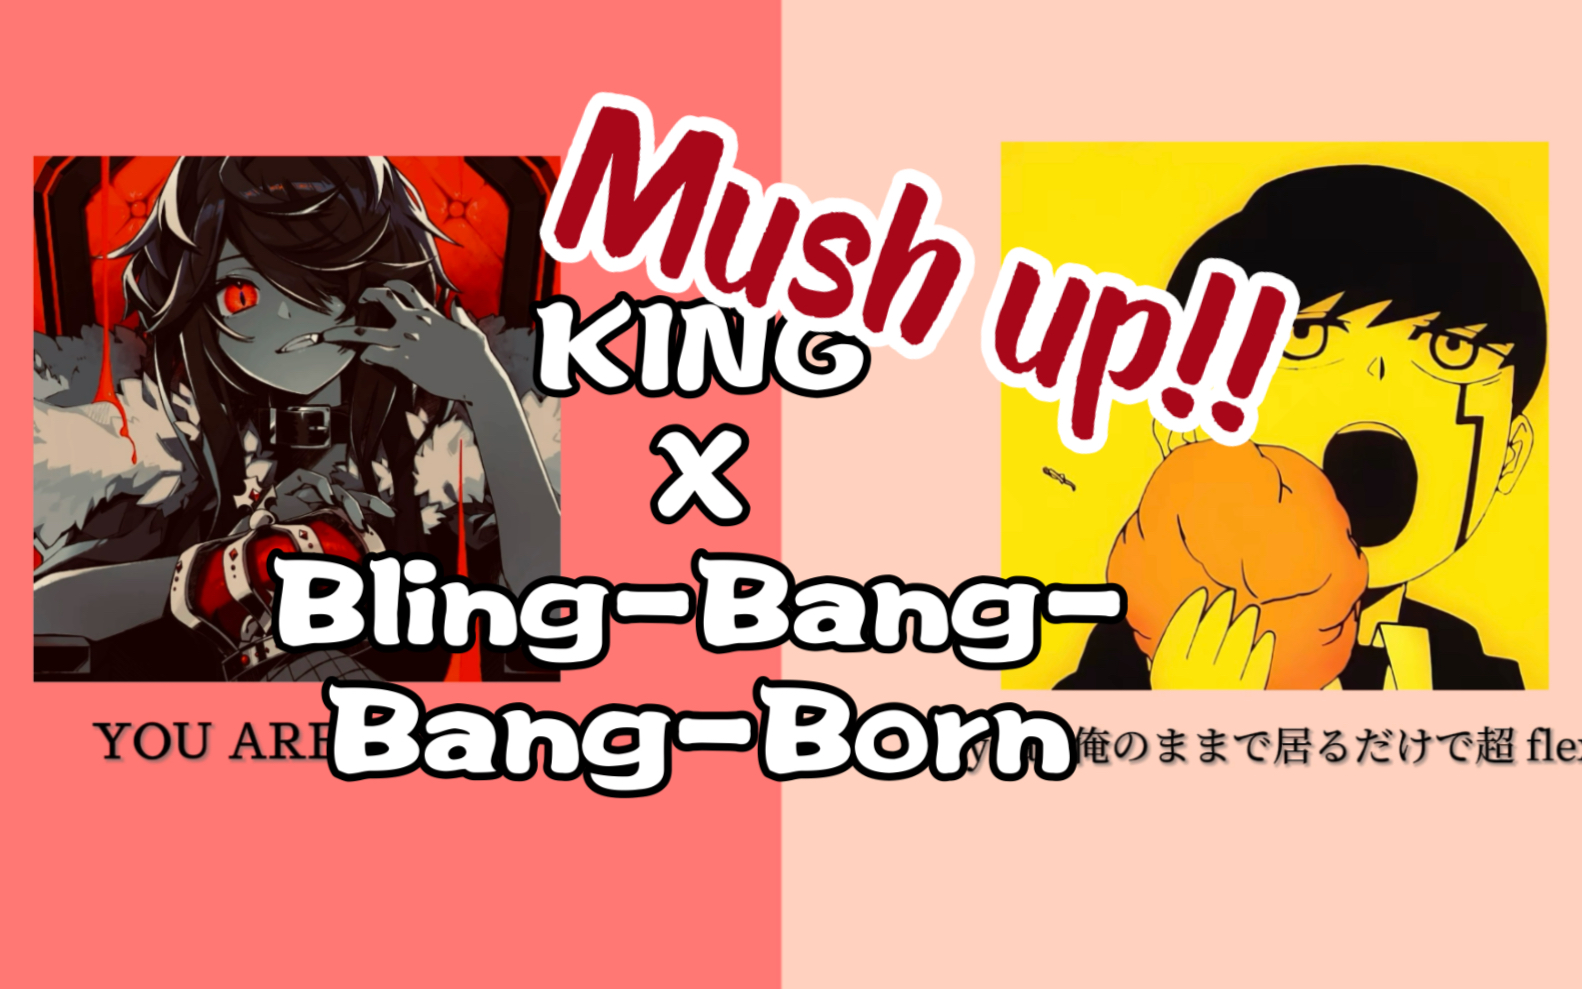 【Mush Up】《KING》x《Bling-Bang-Bang-Born》，强强联手To The 1番上！！